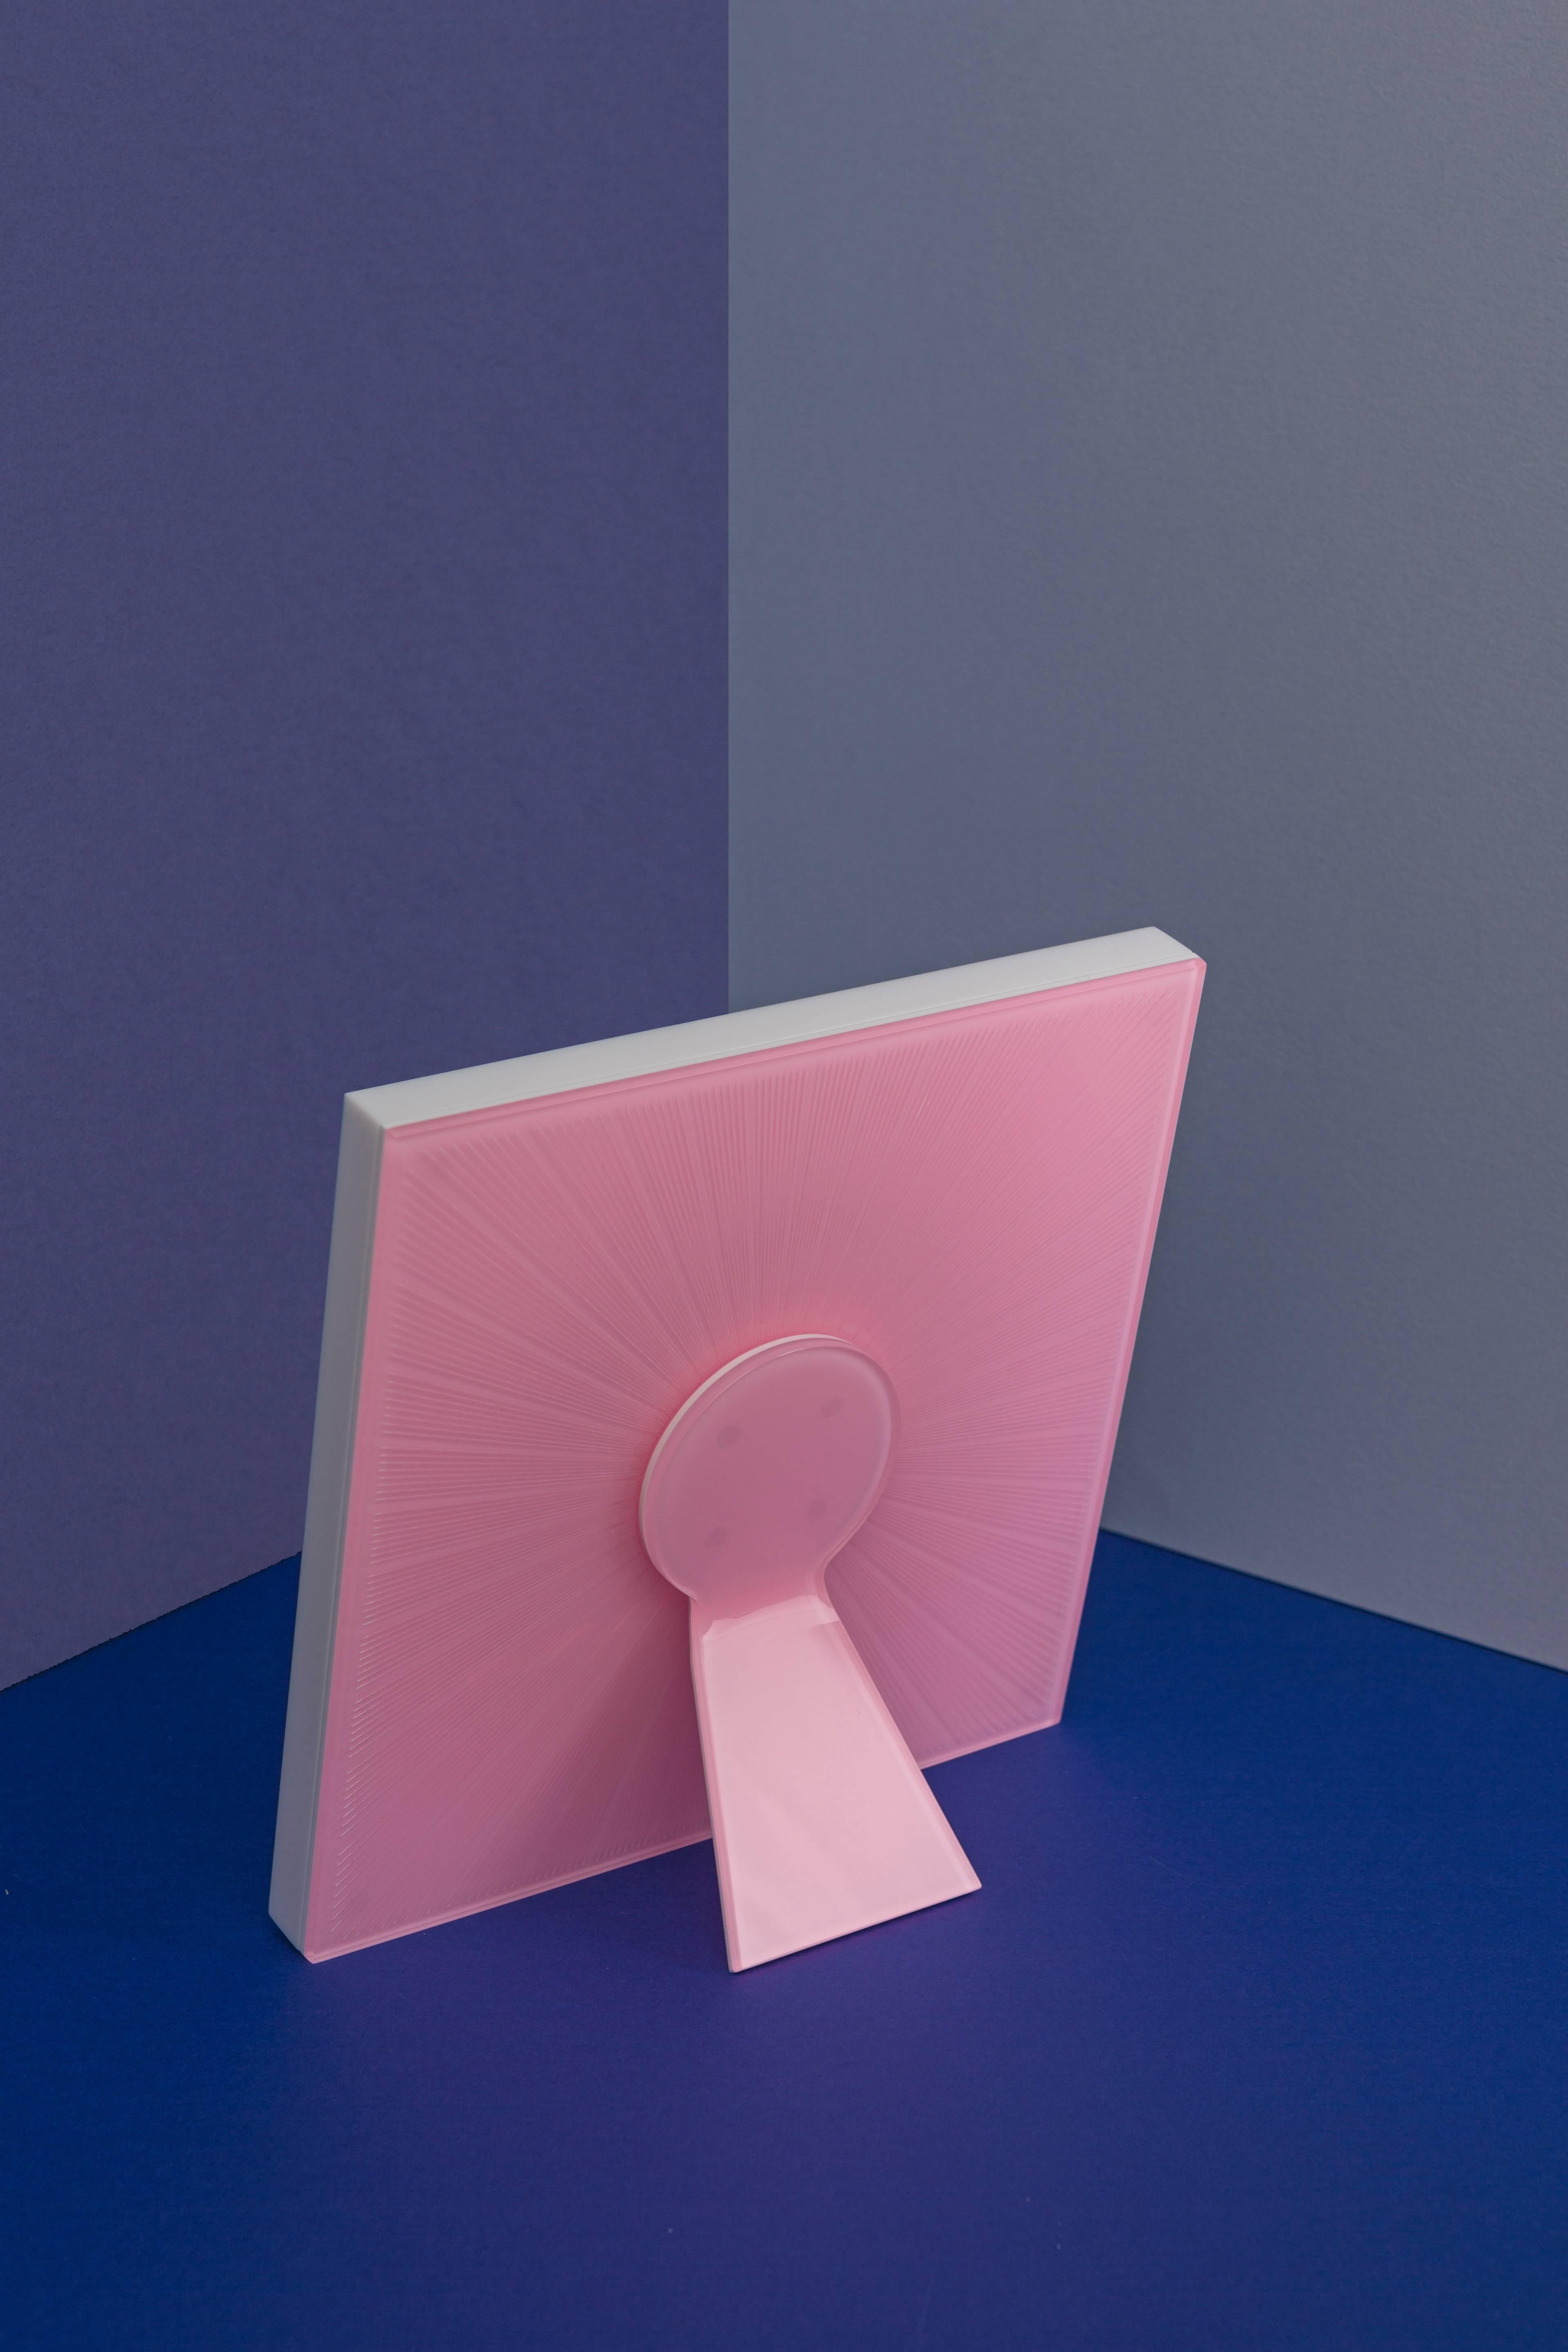 Der Bilderrahmen Sharing Pink ist ein quadratischer italienischer rosa Plexiglas, Ausgabe von Kunst mit Herz Sammlung von Fotorahmen recto verso von Laura G Italien. Es ist etwas Besonderes, weil es sowohl auf der Vorder- als auch auf der Rückseite